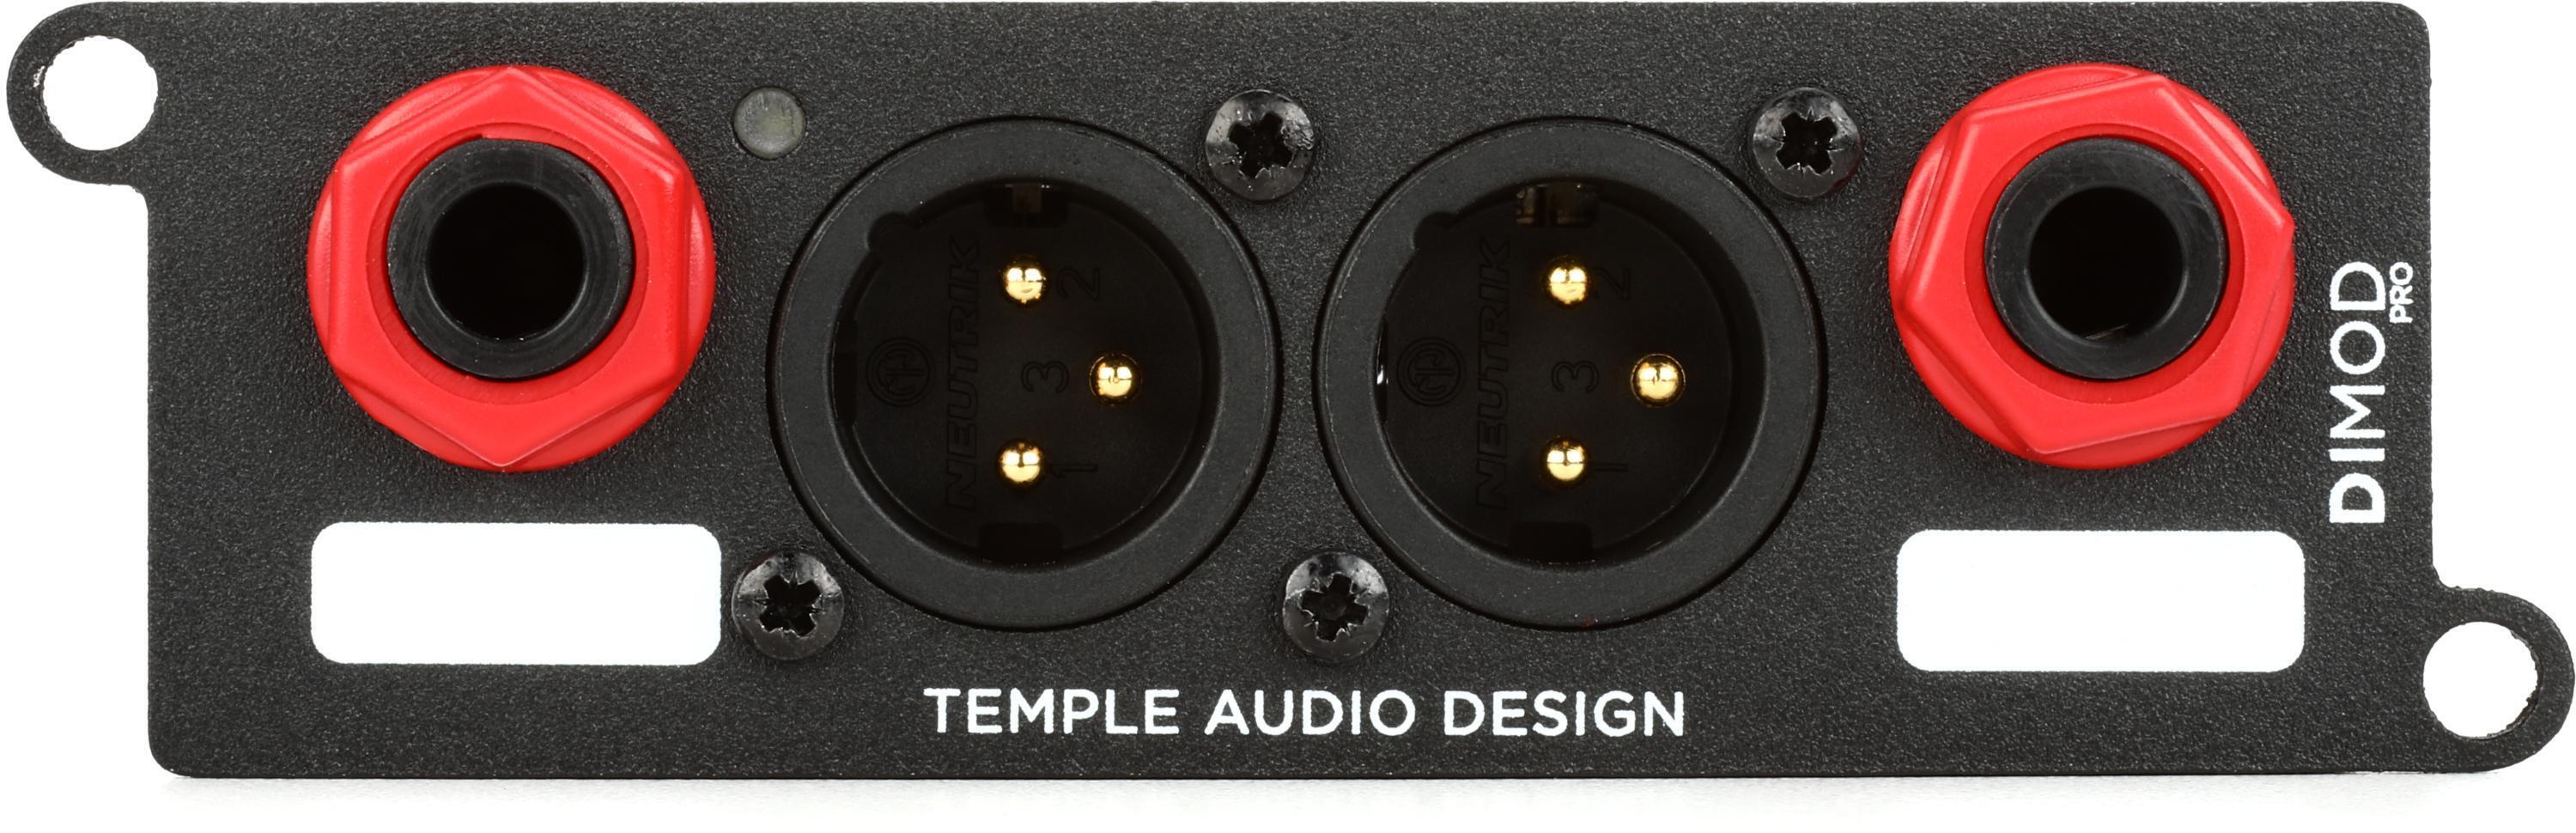 Temple Audio DI MOD Pro Stereo Direct Box Module